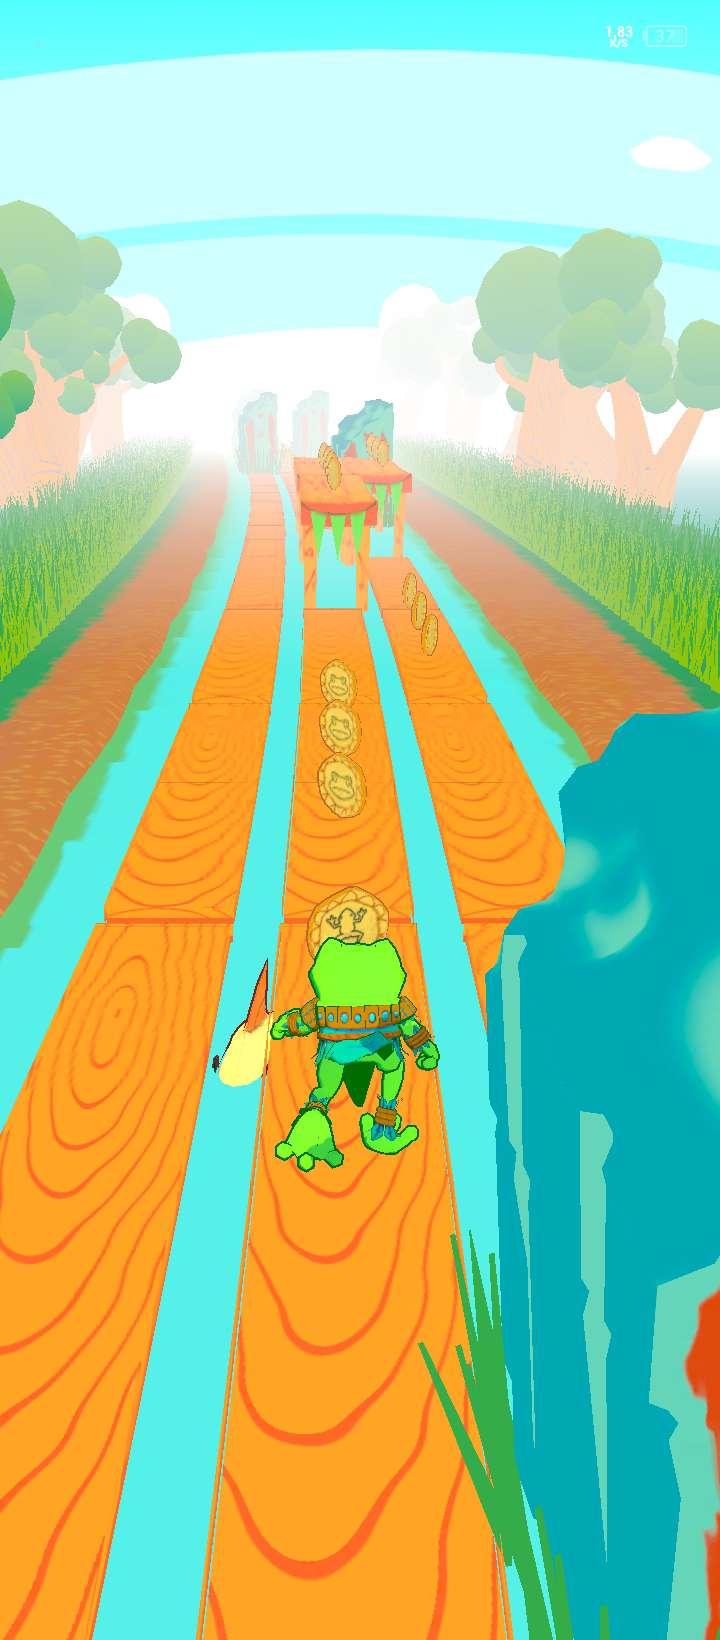 Frogs Run ist ein F2P/P2E NFT-Runner-Spiel, das auf der BNB-Kette basiert und das typische komfortable Runner-Gameplay mit Play-to-Earn-Mechaniken kombiniert.